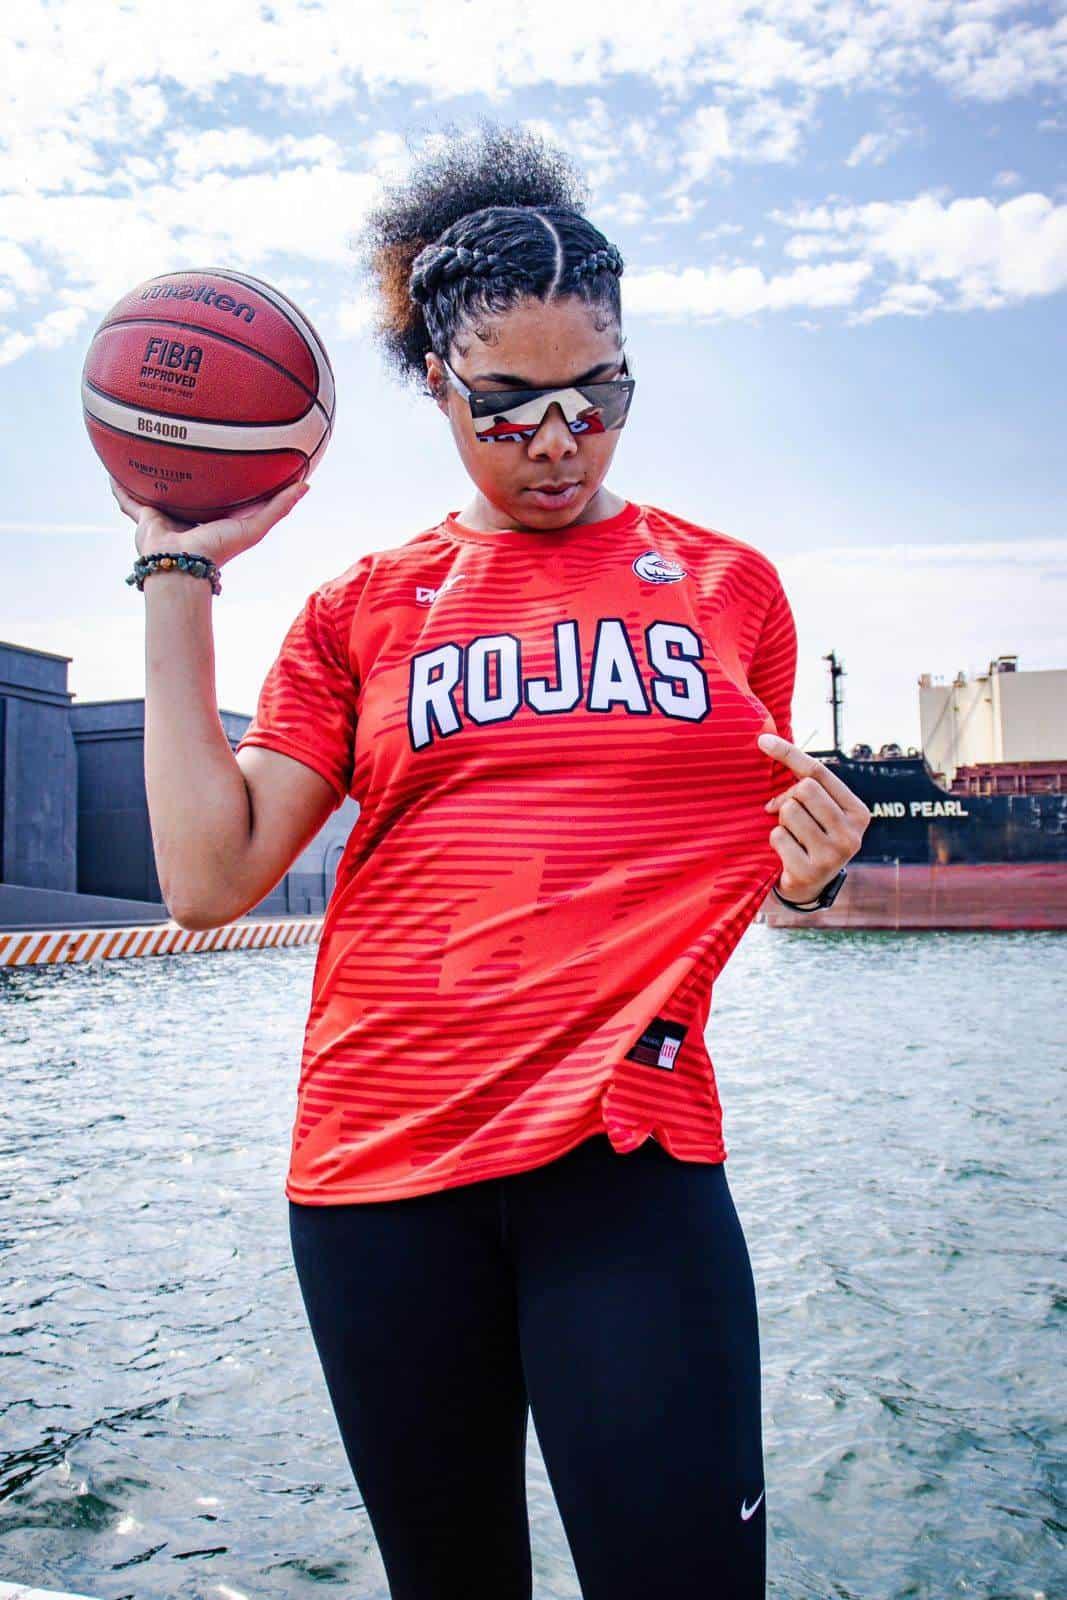 Destacan jugadoras de Rojas en basquetbol de otras latitudes